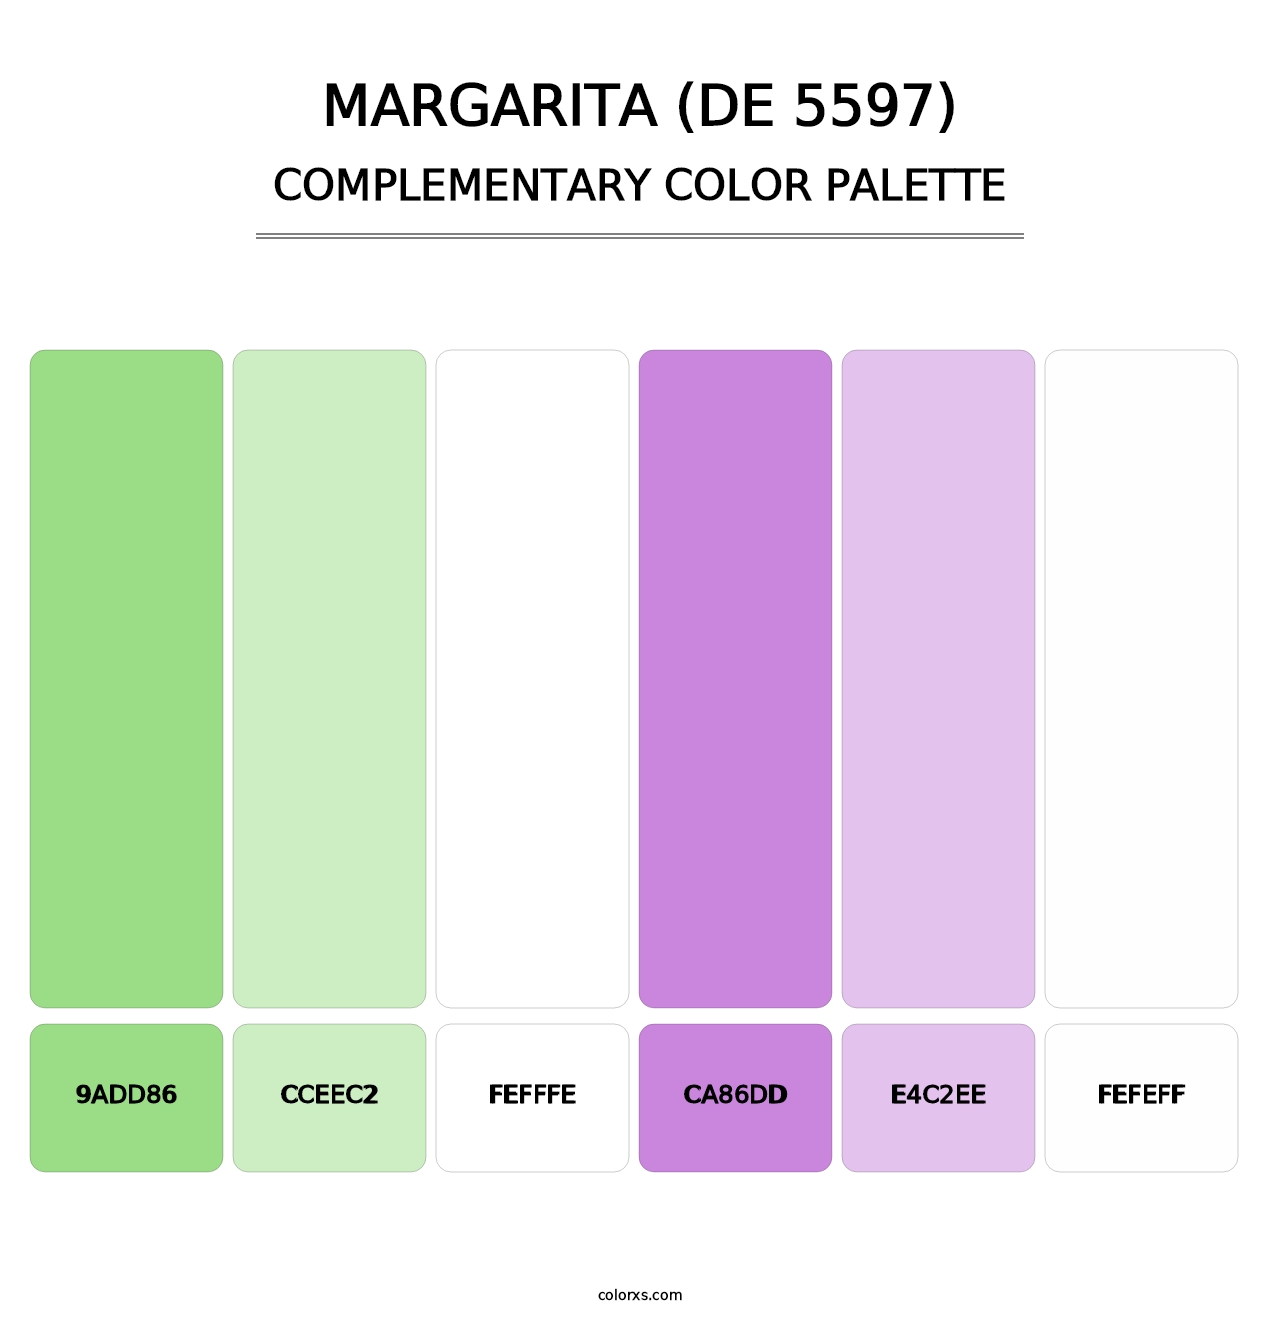 Margarita (DE 5597) - Complementary Color Palette